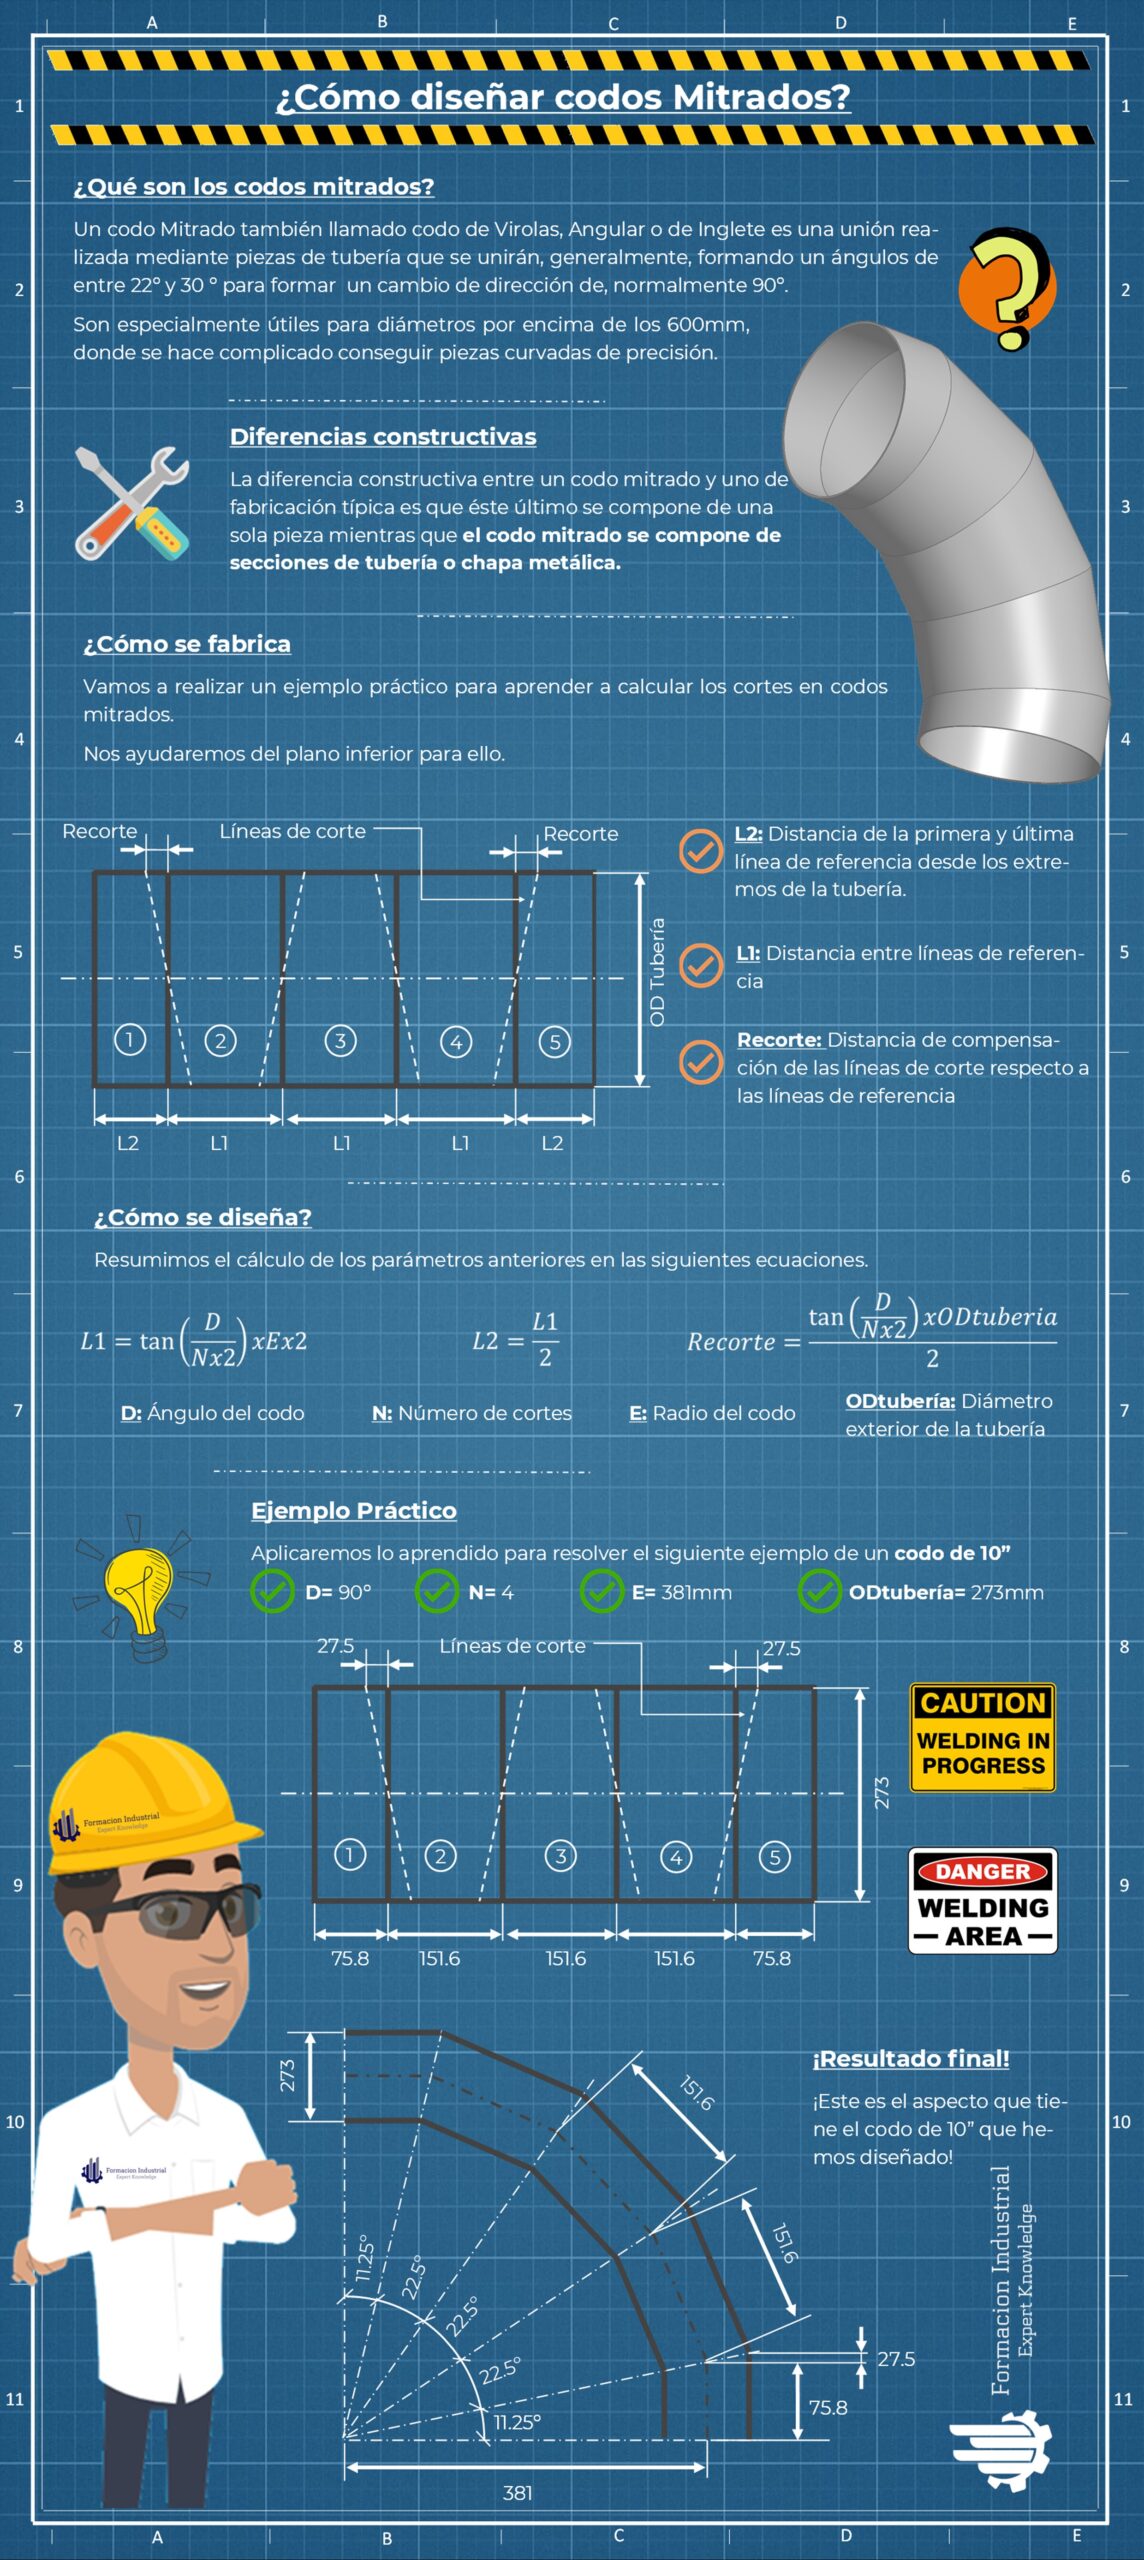 Infografía detallada del proceso de fabricación de codos mitrados en la industria de tuberías